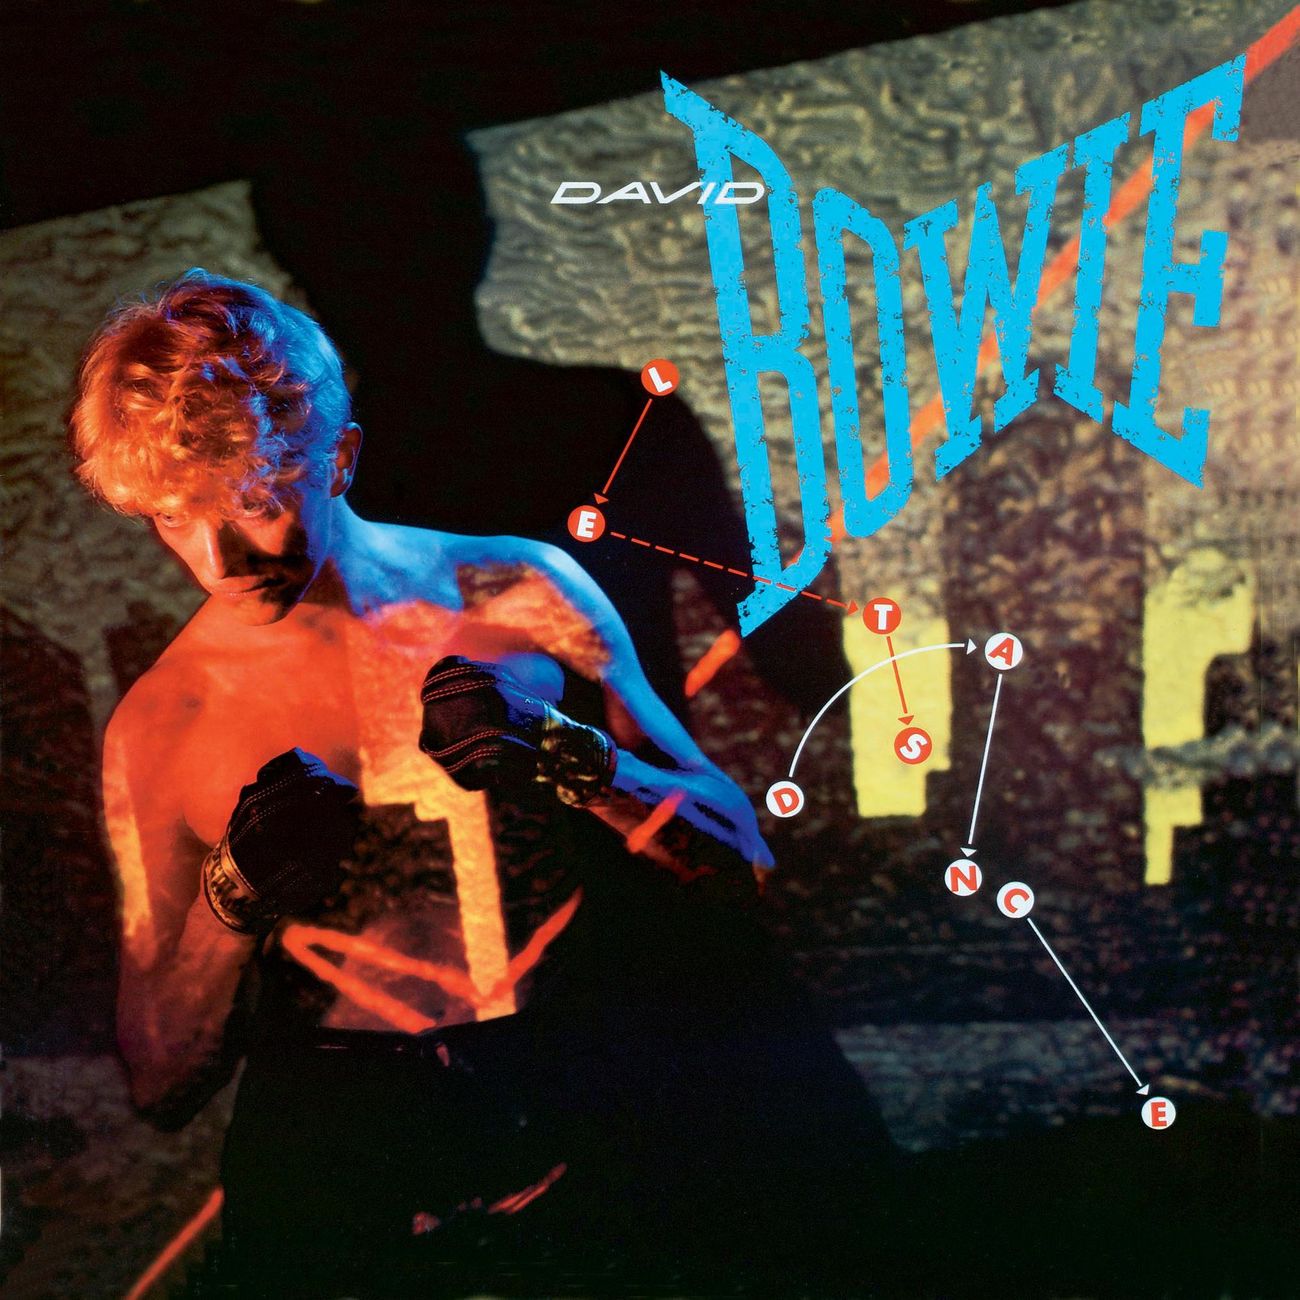 Let’s dance. David Bowie.